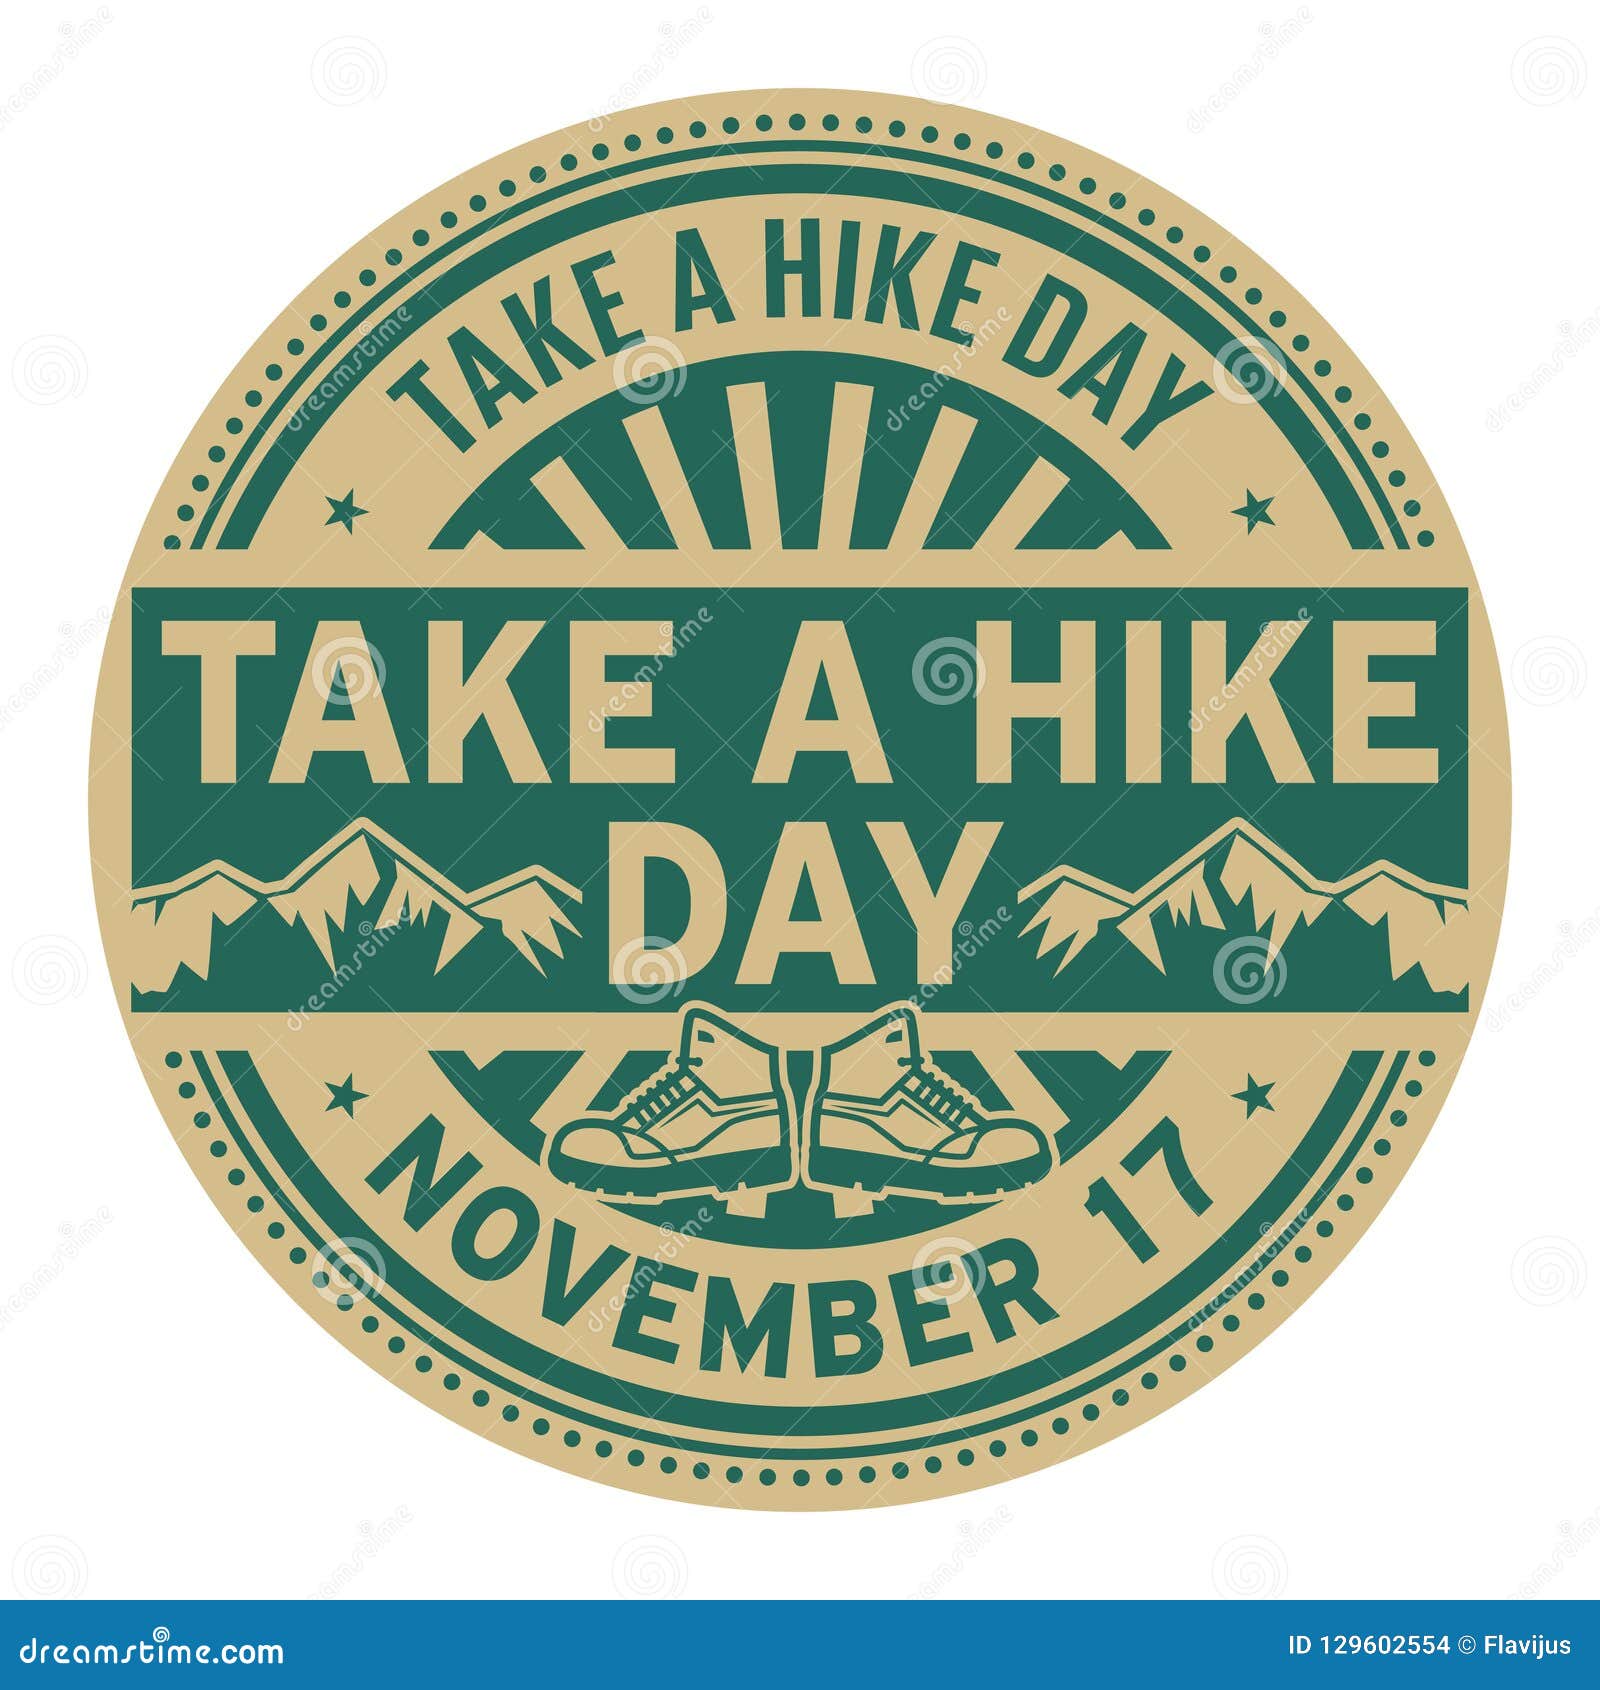 take a hike day, november 17